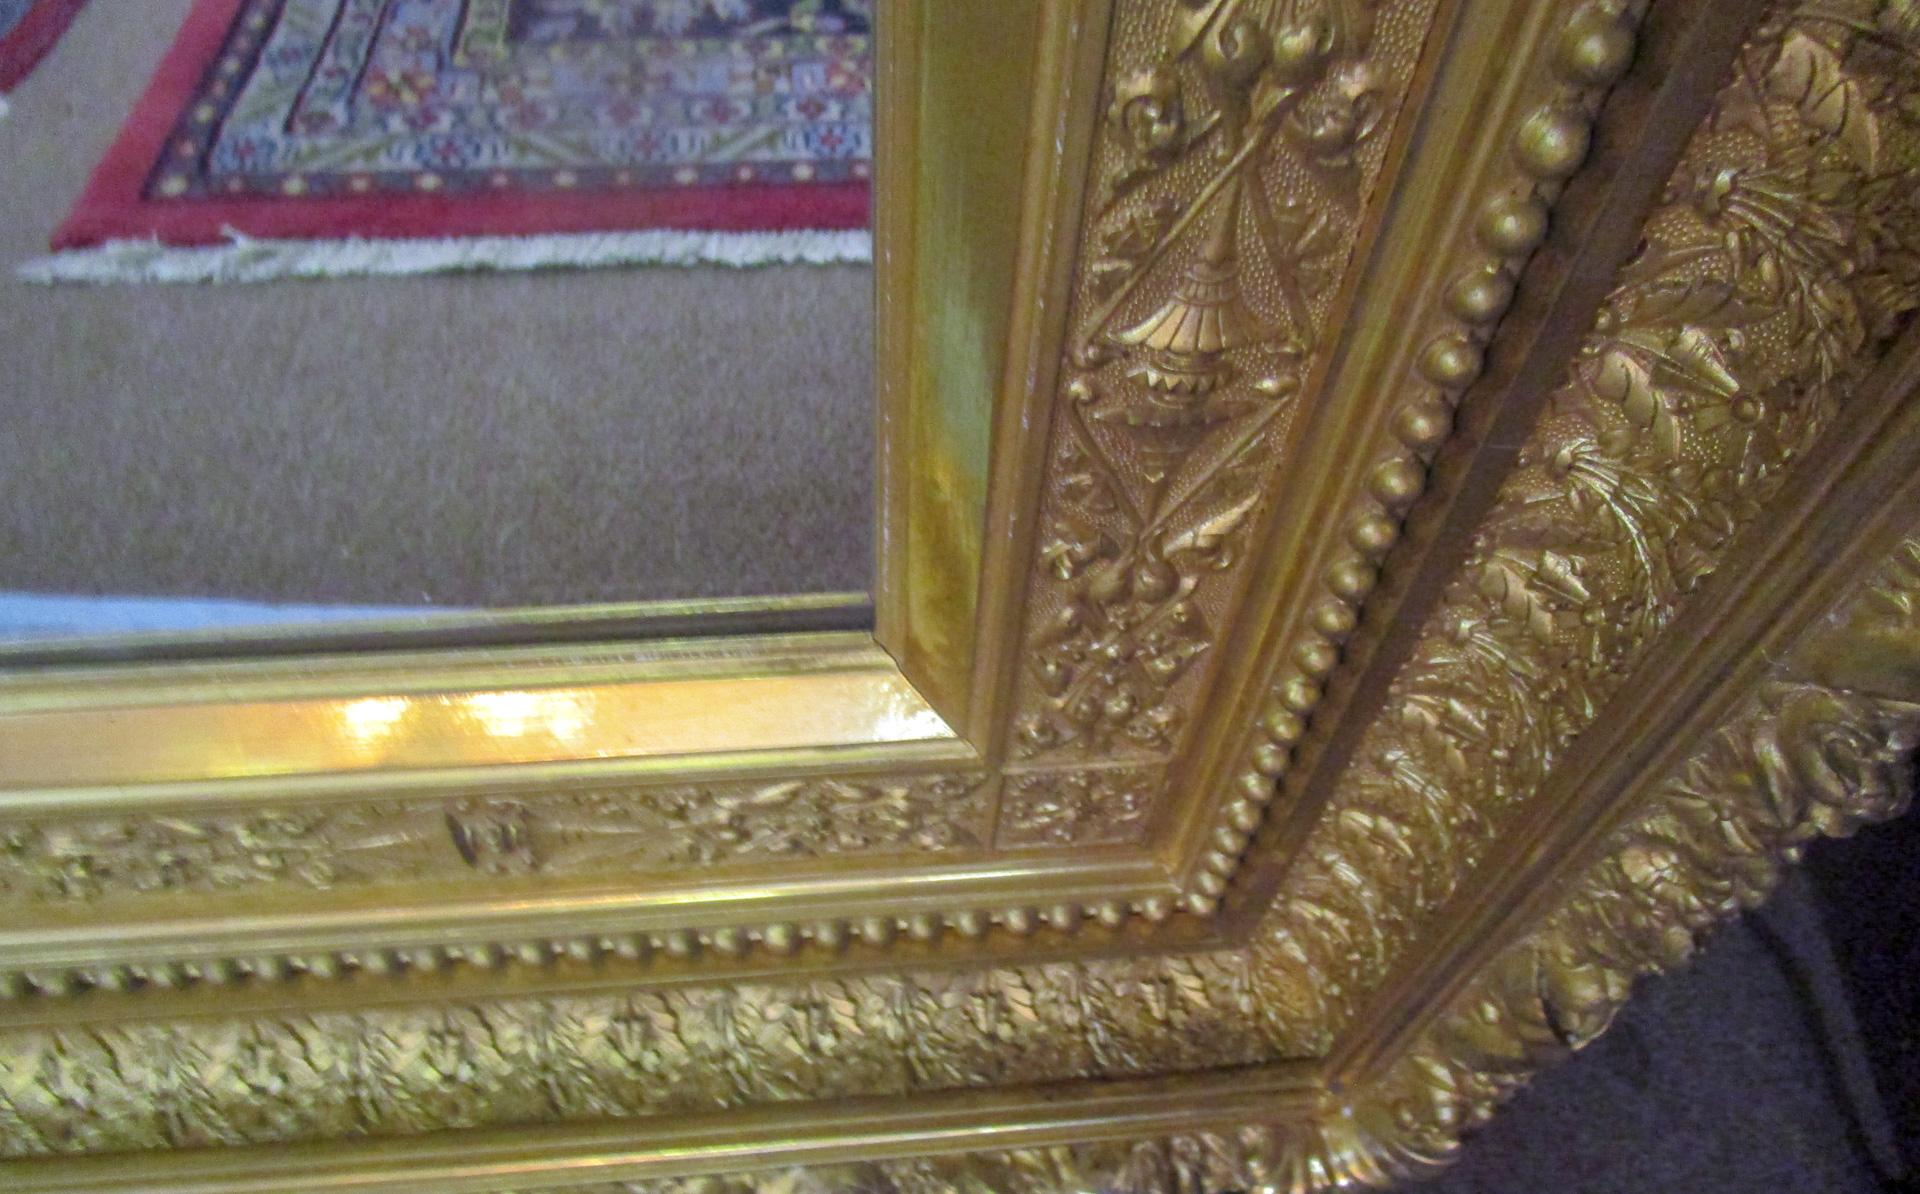 Miroir de cheminée du mouvement esthétique américain du XIXe siècle aux proportions exceptionnelles. Les détails sont magnifiques, avec des couches tridimensionnelles de motifs complexes de vignes, de fleurs en cloche, de feuilles et de perles.